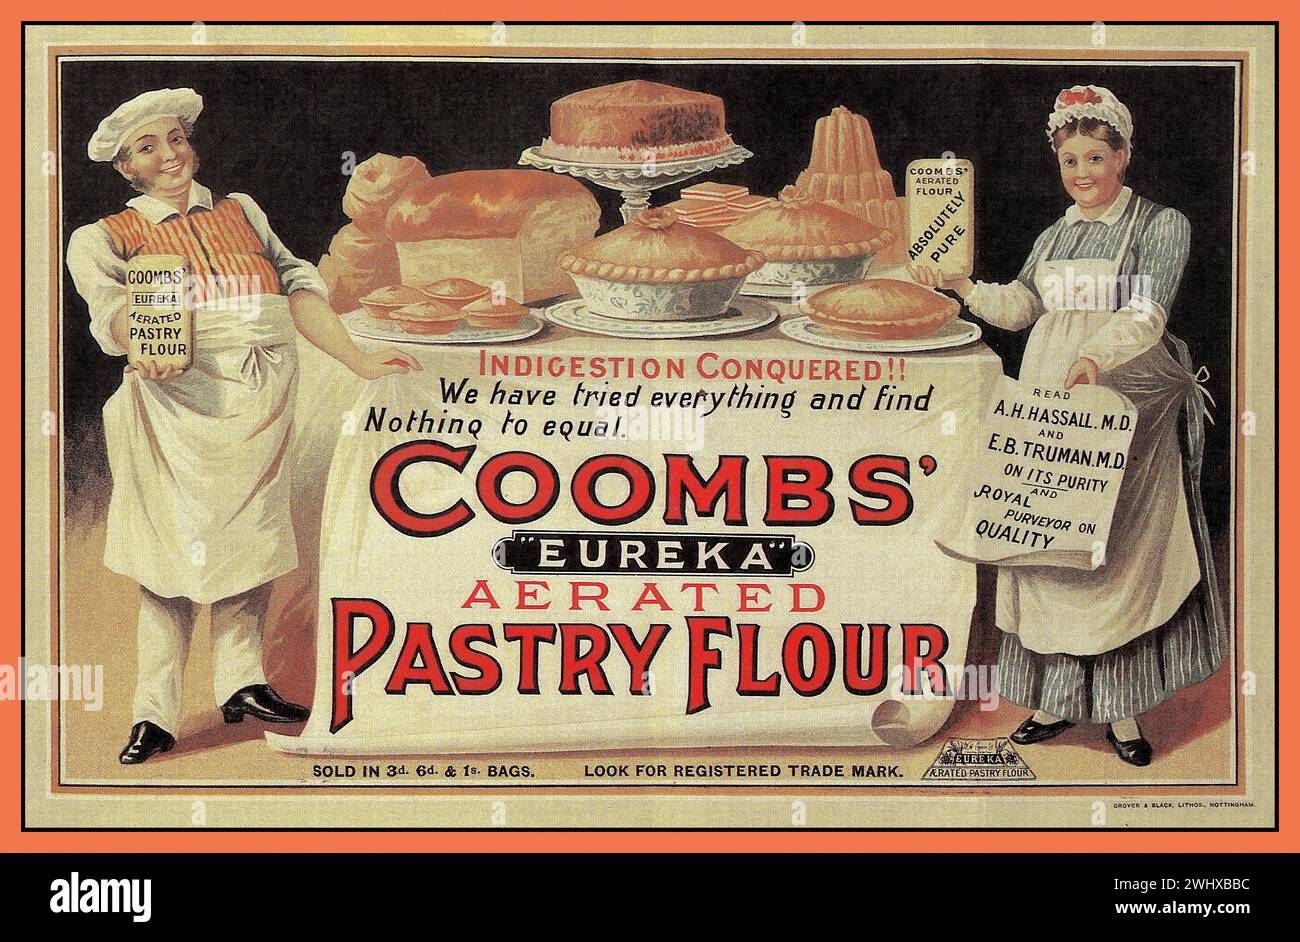 Vintage années 1900 farine de pâtisserie publicité cuisine aliments ingrédients illustration par COOMBS Eureka farine de pâtisserie aérée. Great Britain UK imprimé à Nottingham. Banque D'Images